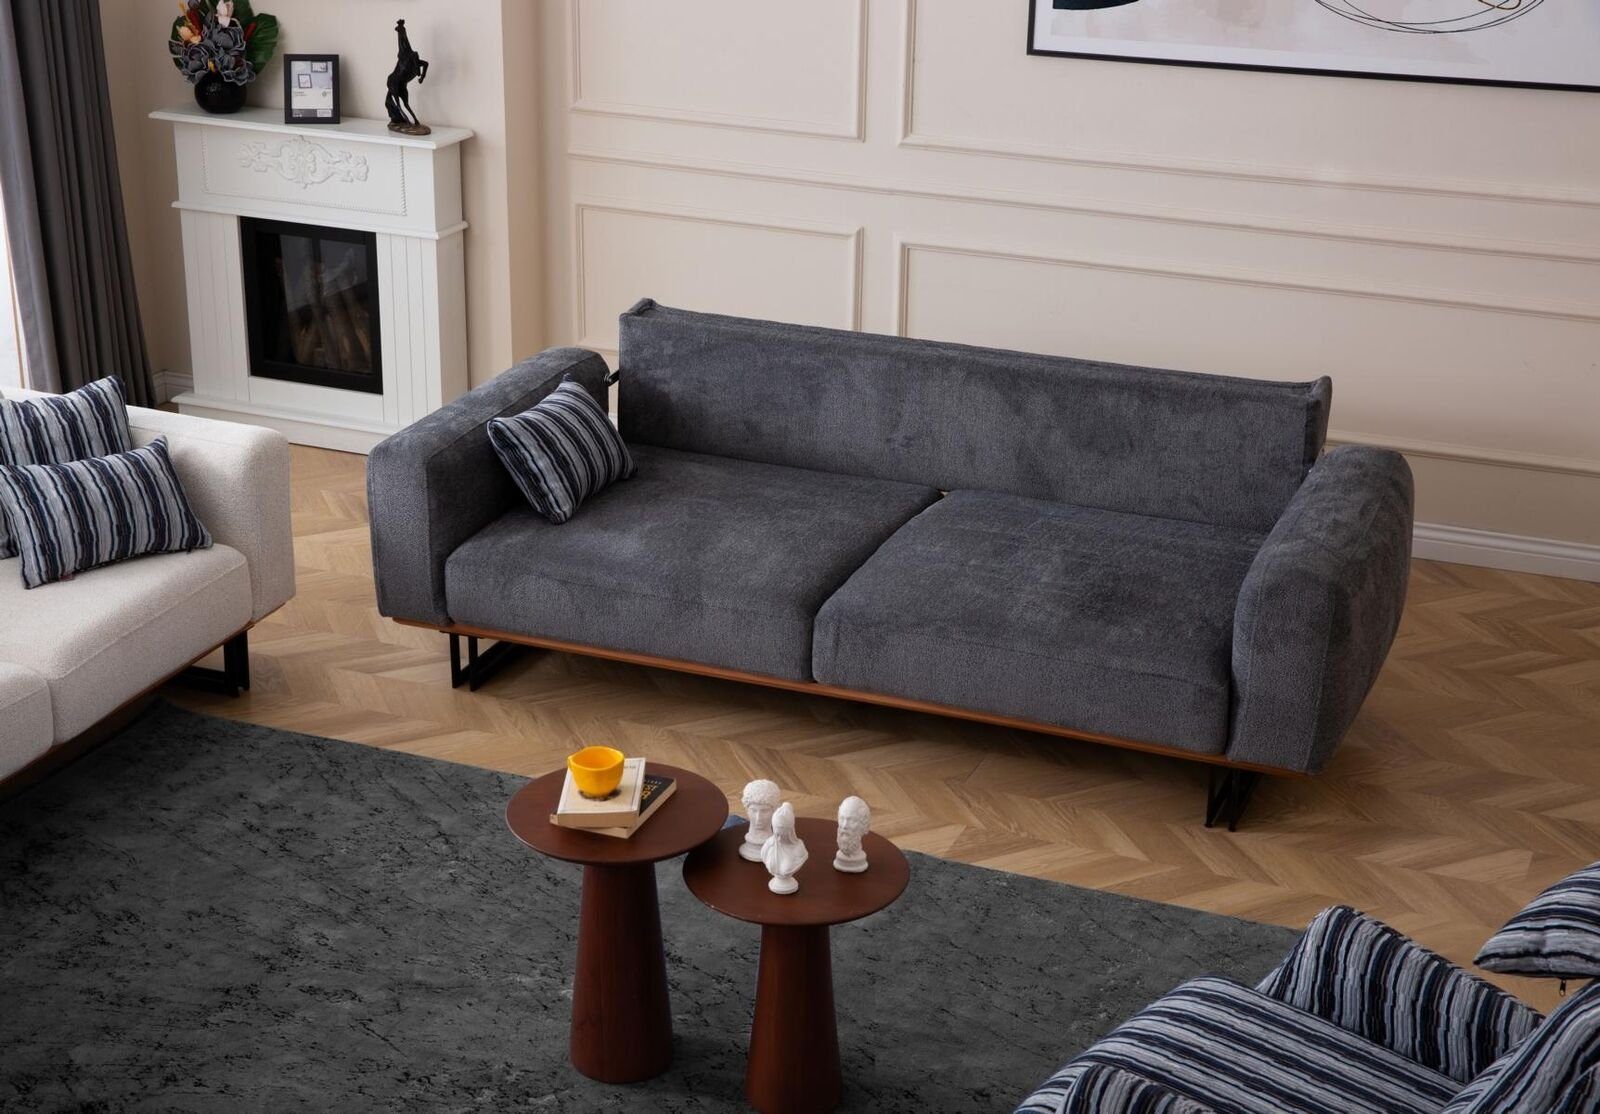 JVmoebel 3-Sitzer Couch 230cm Sitzpolster 3 Sitzer Sofa Grau Designer Möbel Wohnzimmer, 1 Teile, Made in Europa